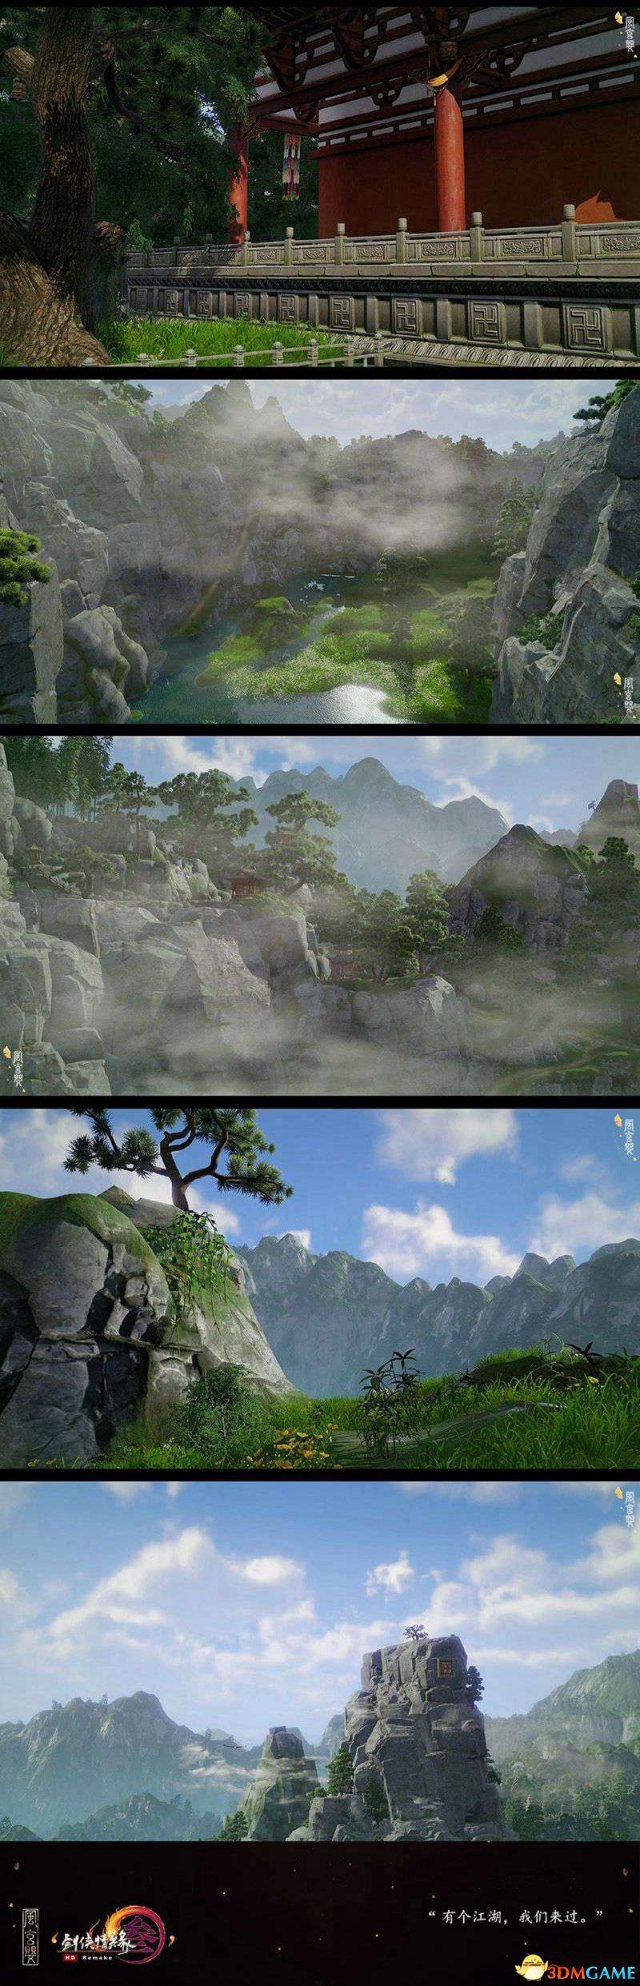 大美江湖 《剑网3》重制版有爱玩家截图赏